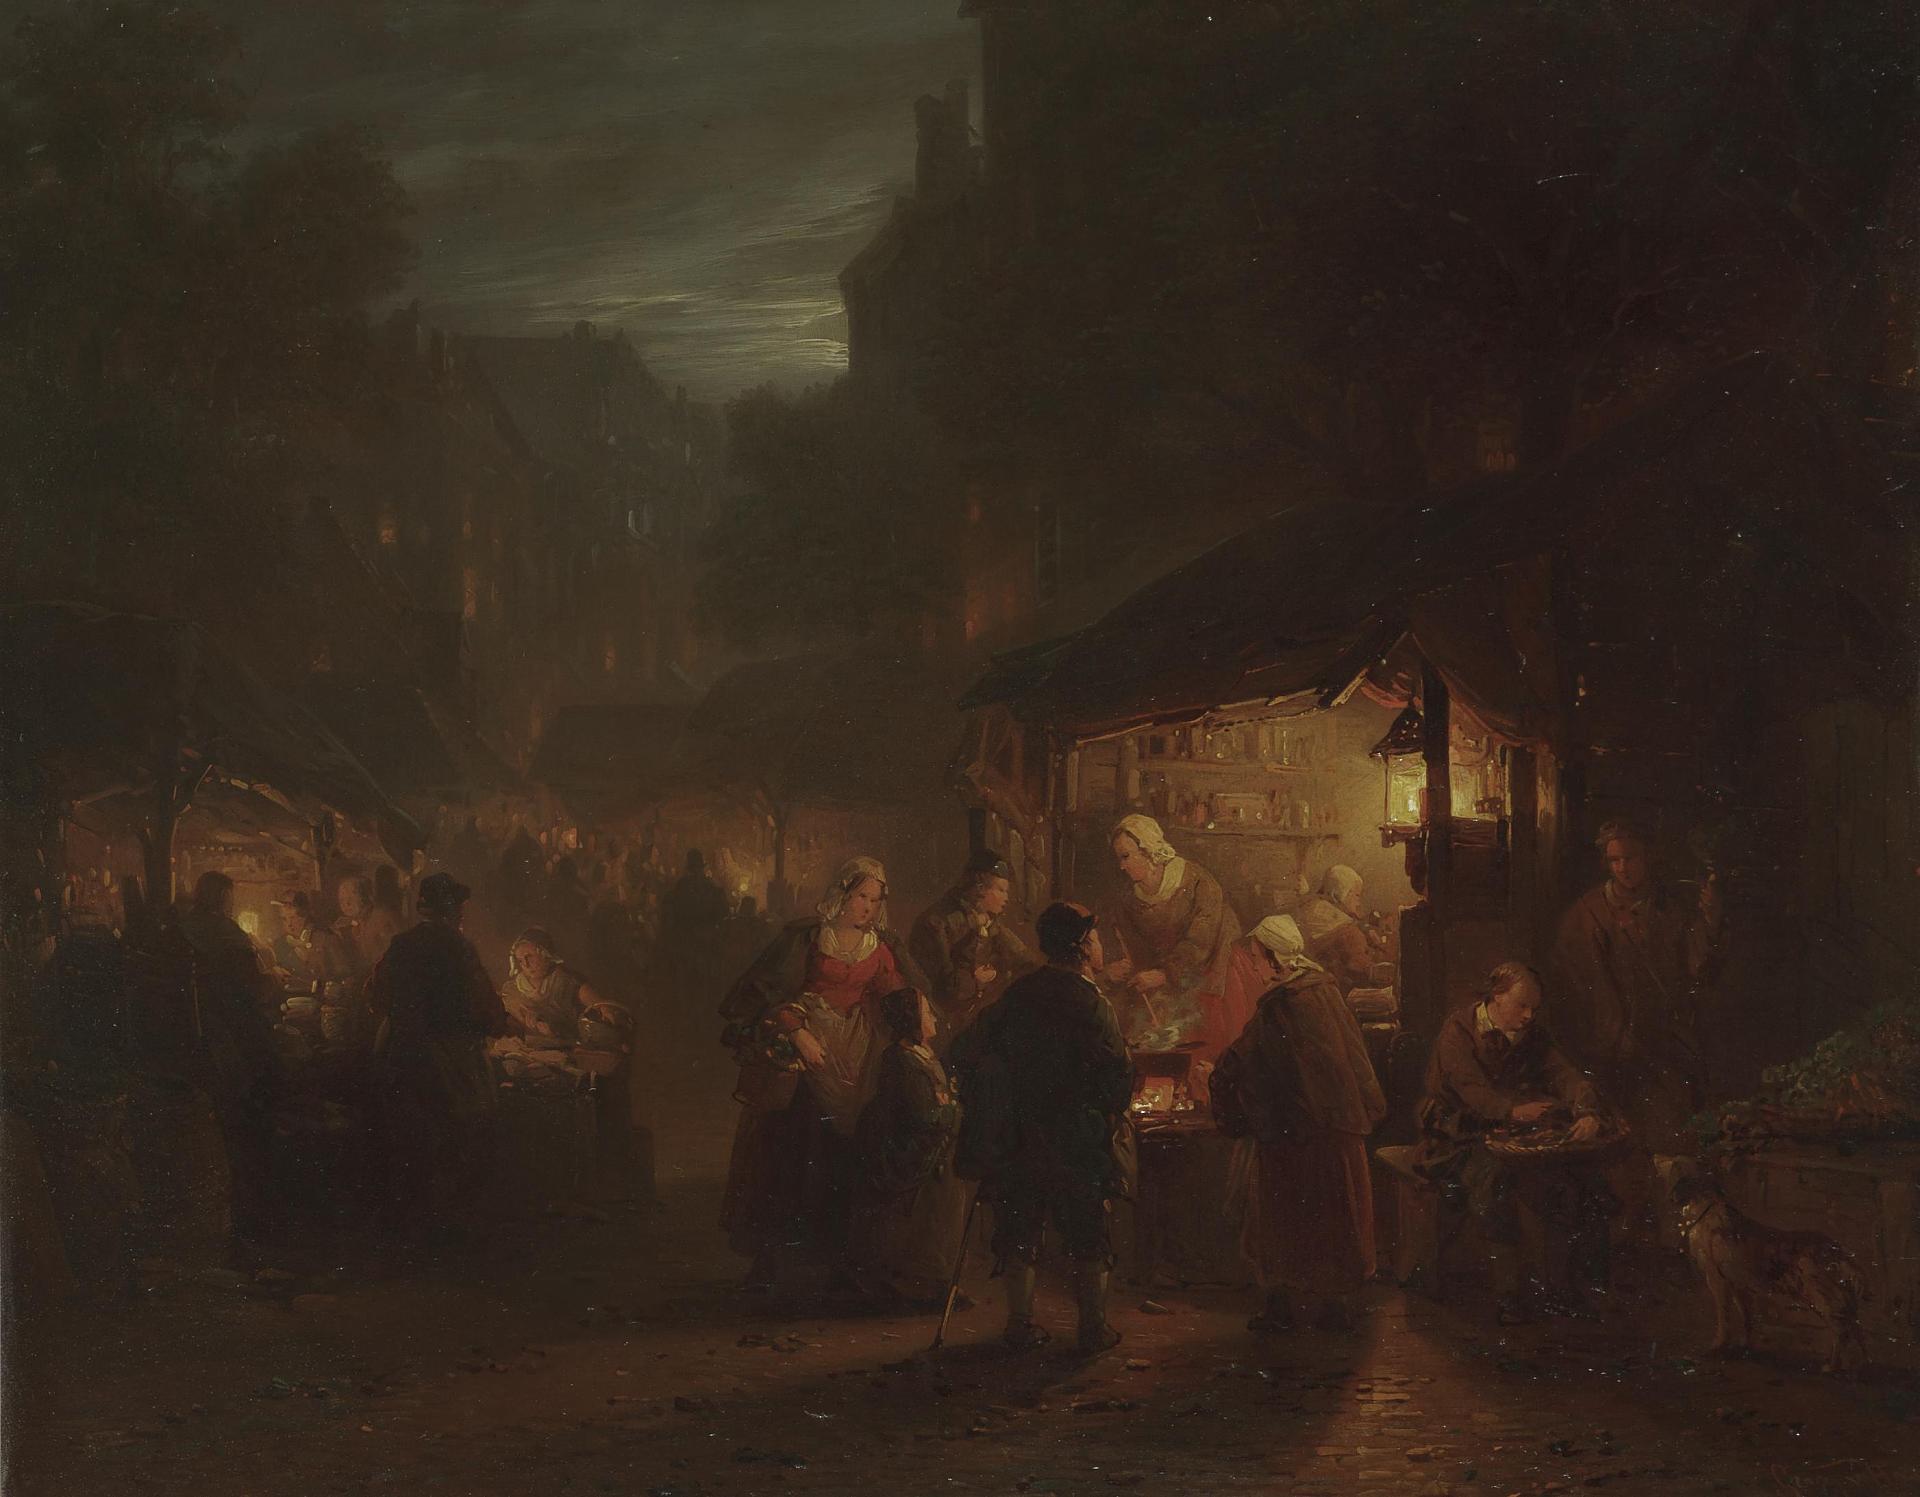 Георг Гиллис ван Ханен. "Ночная ярмарка". 1867.